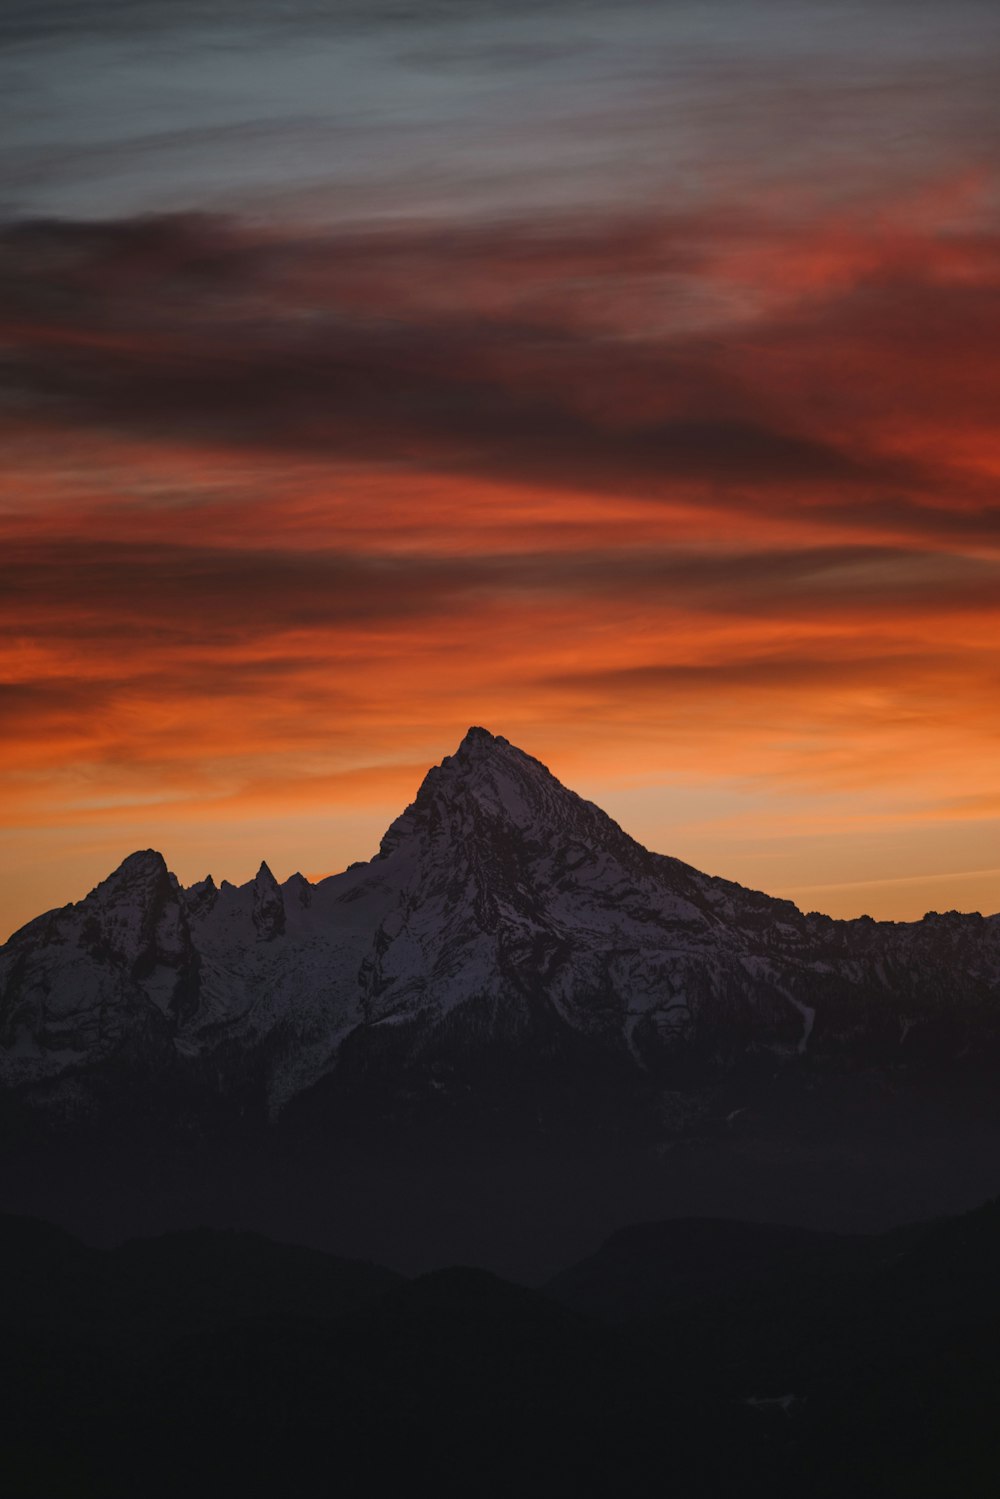 Ein Berg mit rotem Himmel im Hintergrund